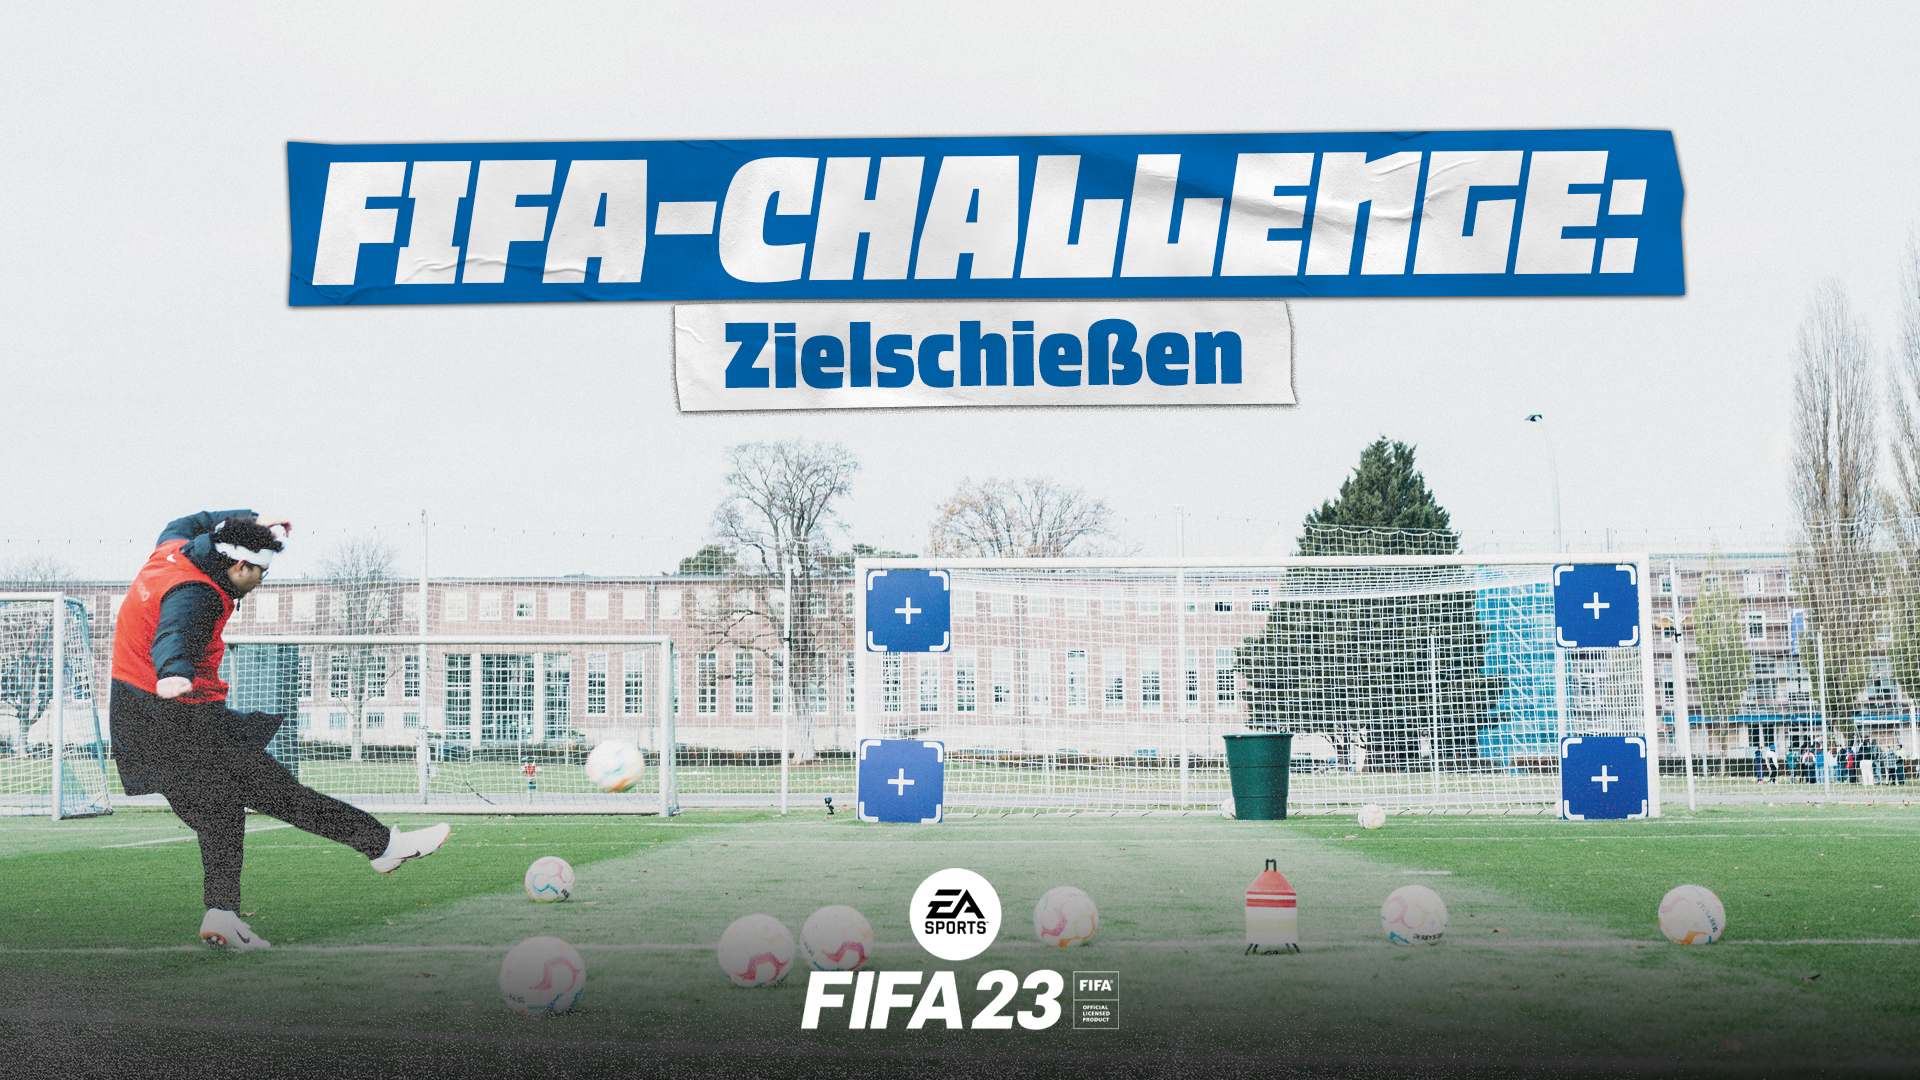 Die Grafik für das Zielschießen im Rahmen der FIFA-Challenge.